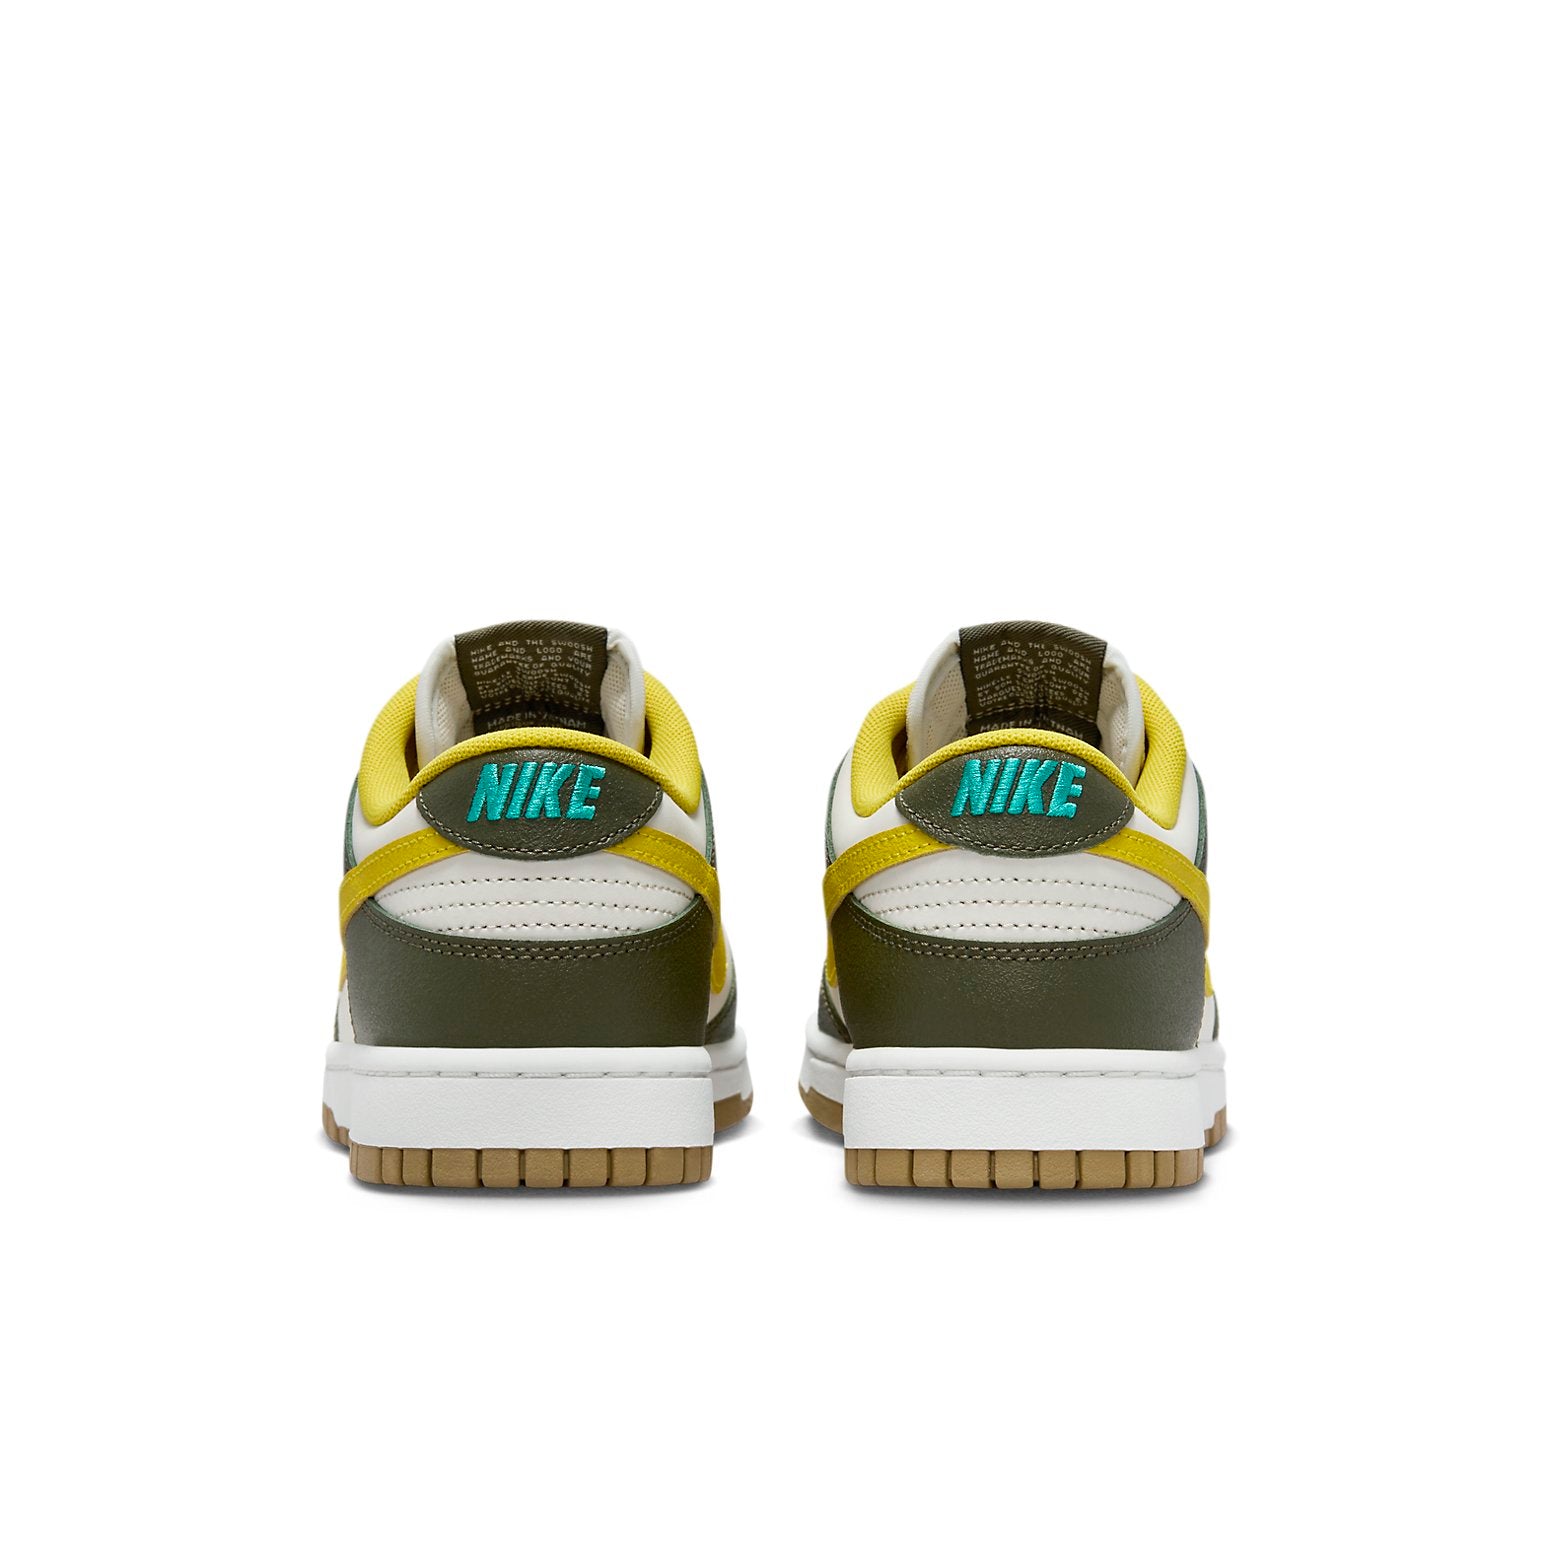 Nike Dunk Low Retro PRM \'Cargo Khaki Vivid Sulfur\'  FV3629-371 Classic Sneakers